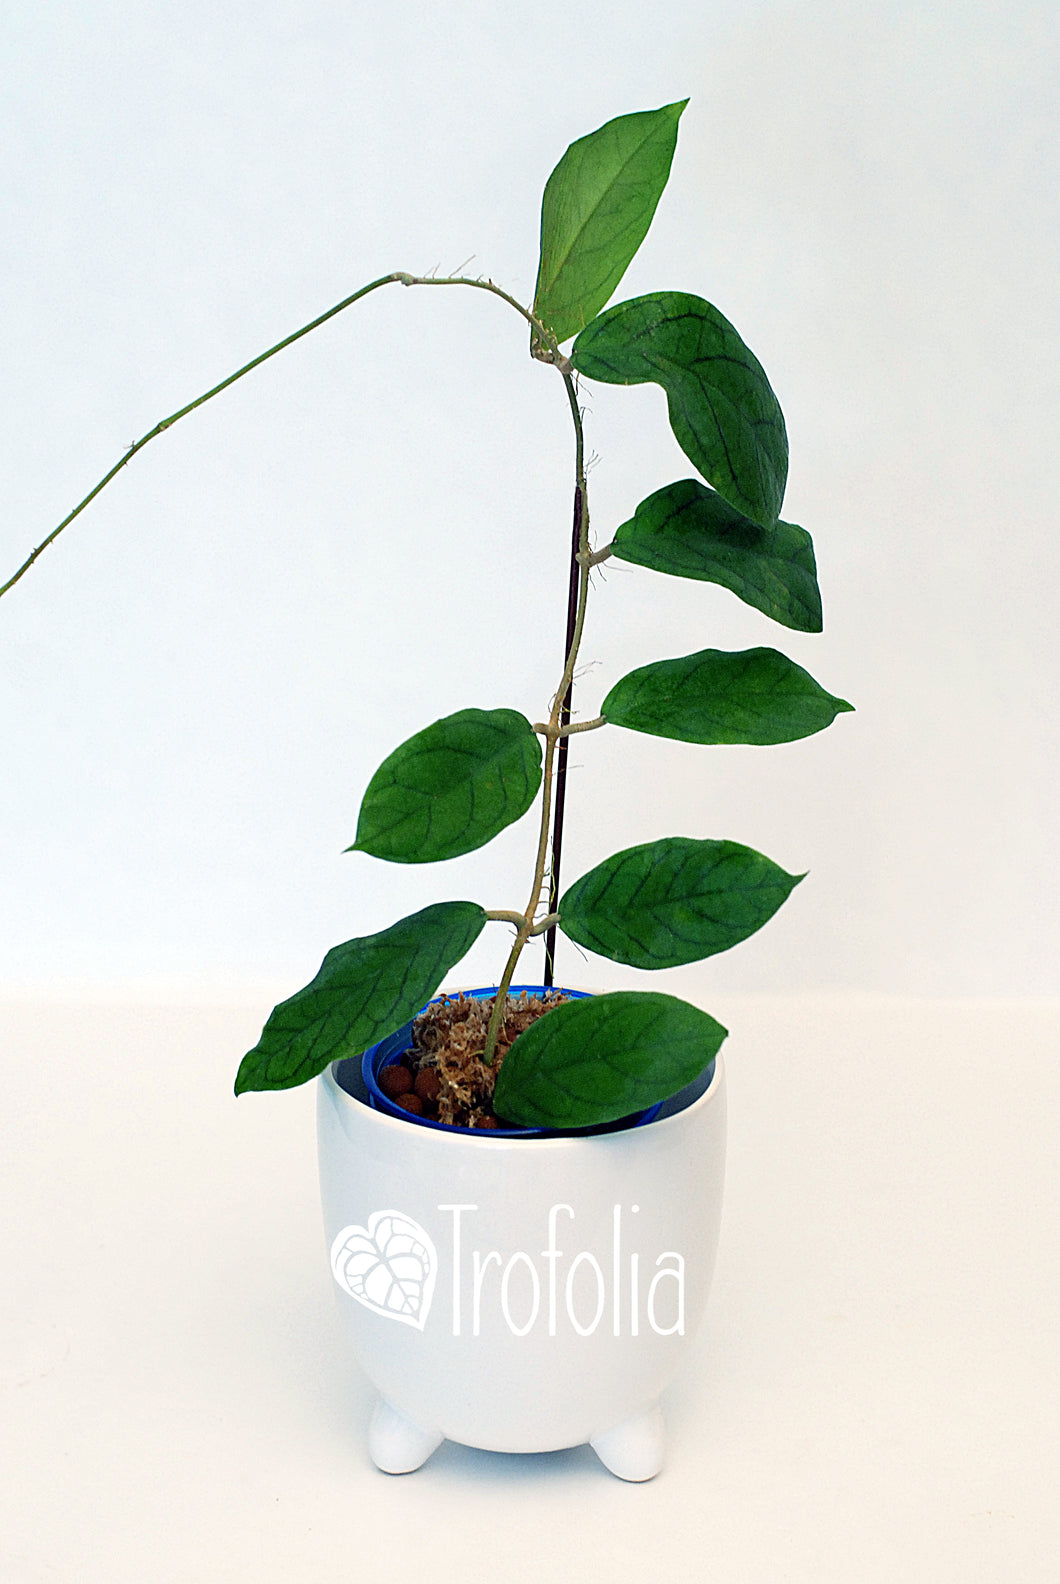 Hoya Vitellinoides - Trofolia